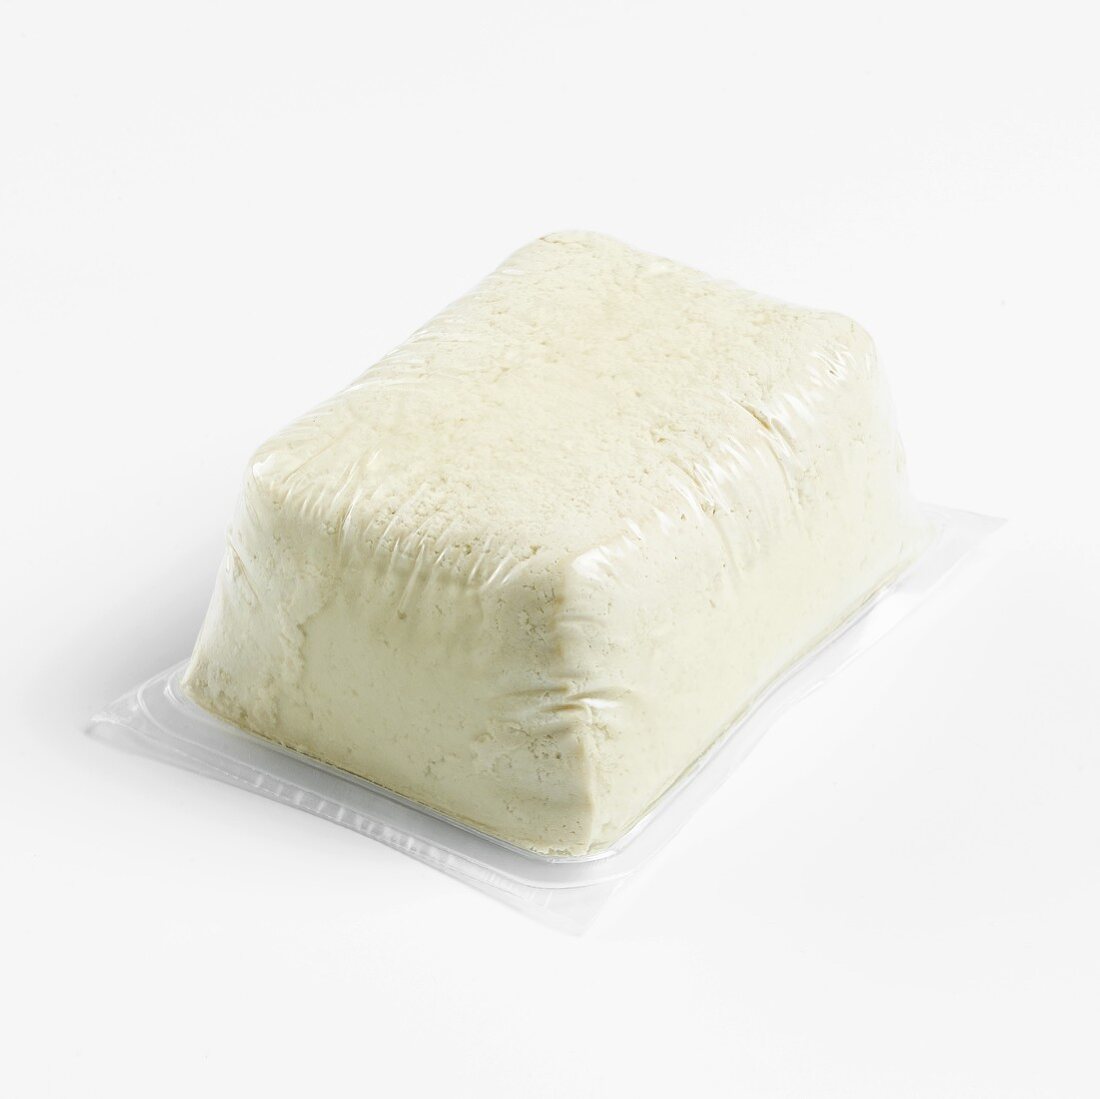 Tofu in plastic packaging